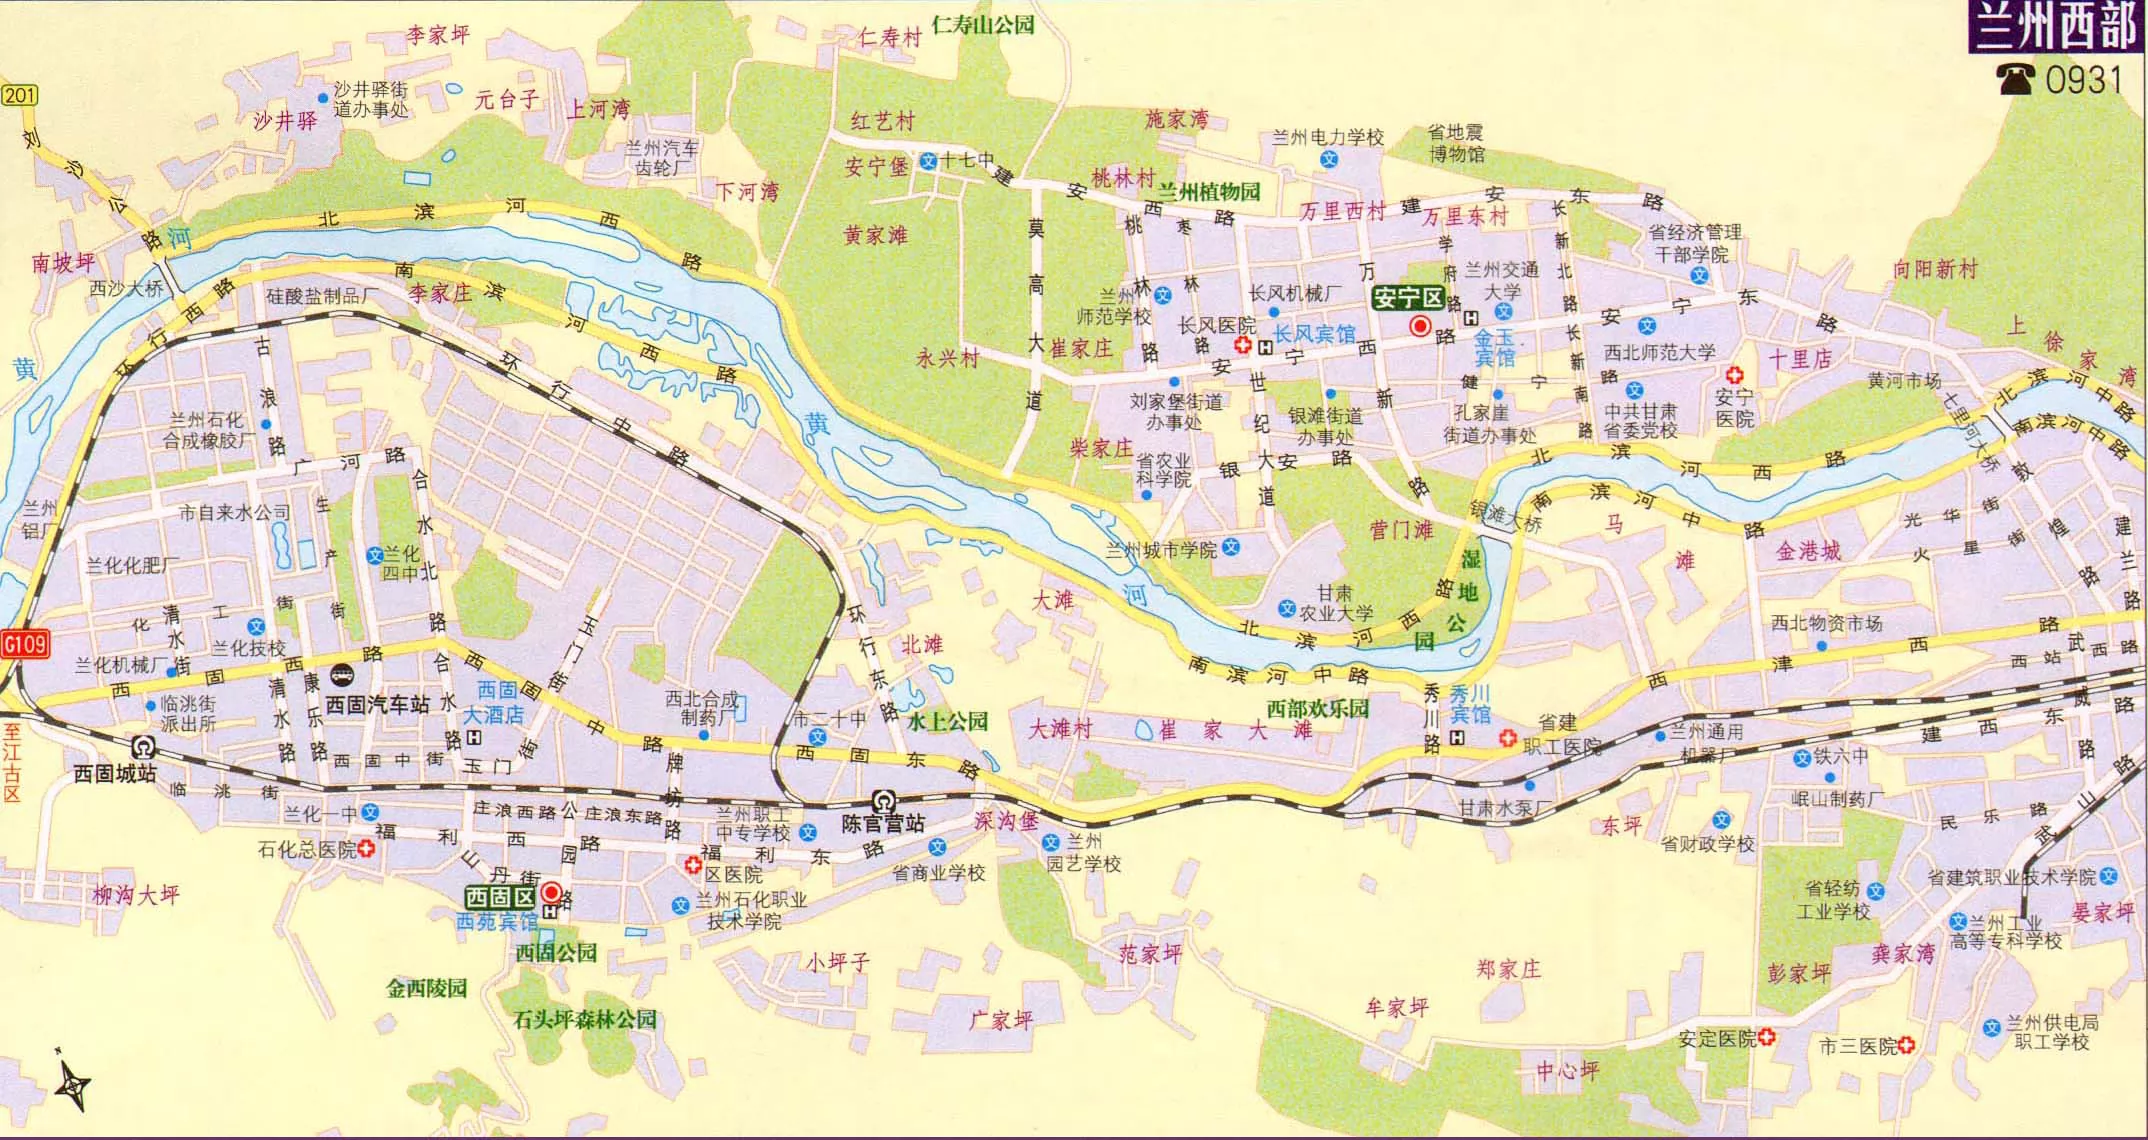 昆明市区划交通地图-最新昆明市区划交通地图下载-江西地图网